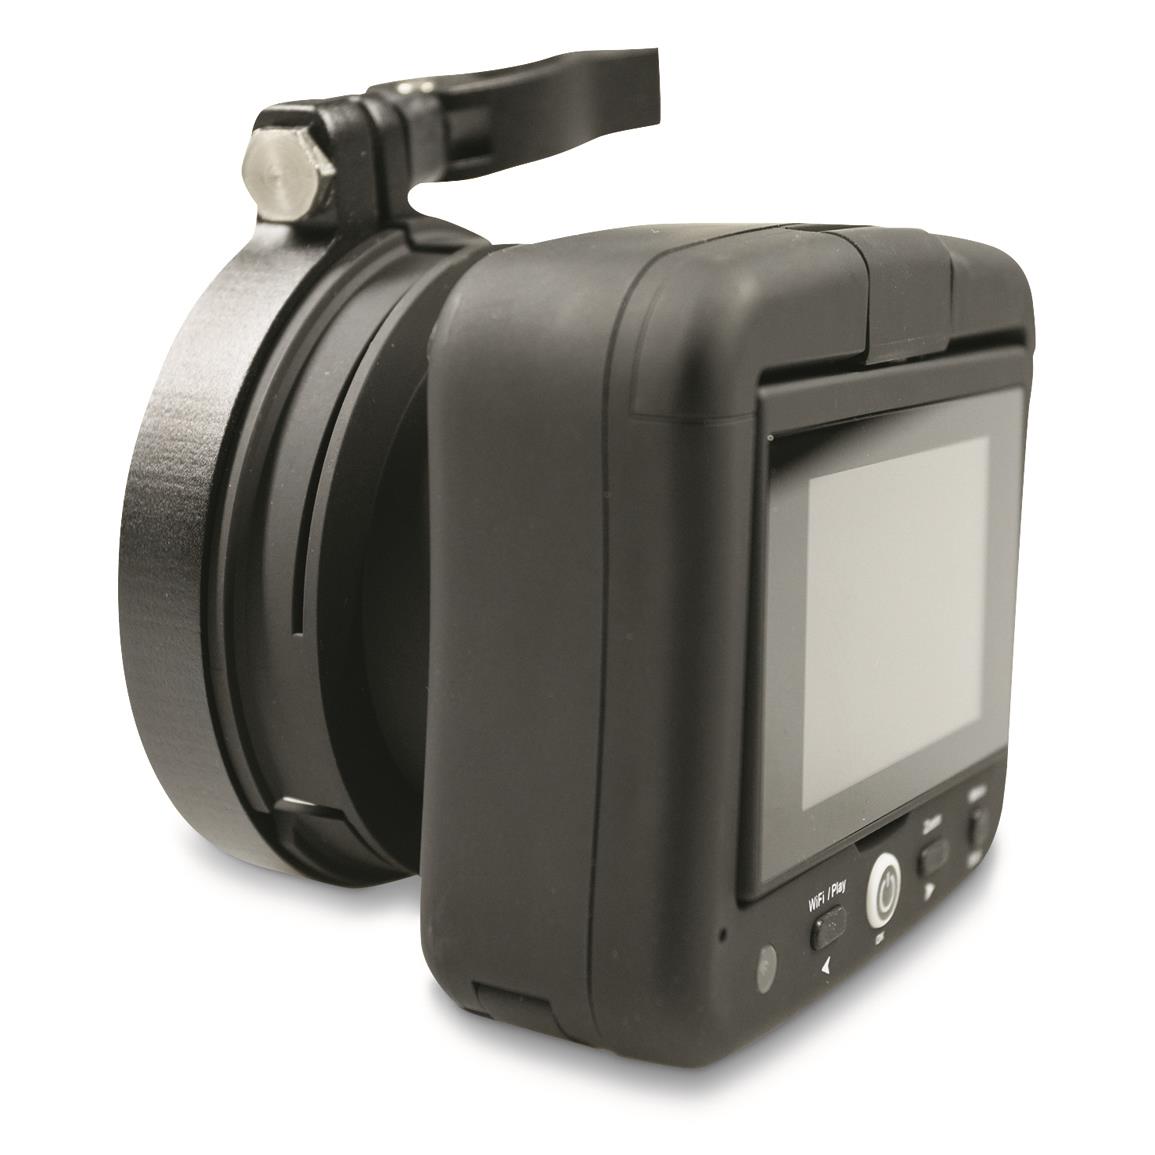 Tactacam Spotter LR Video Recorder